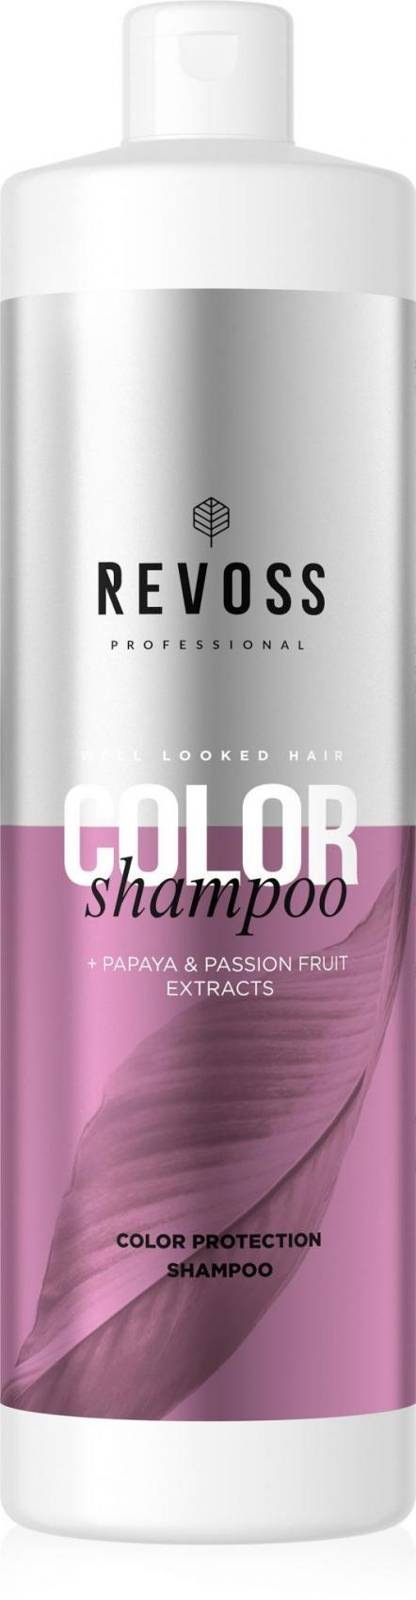 szampon kwaśne ph do włosów farbowanych